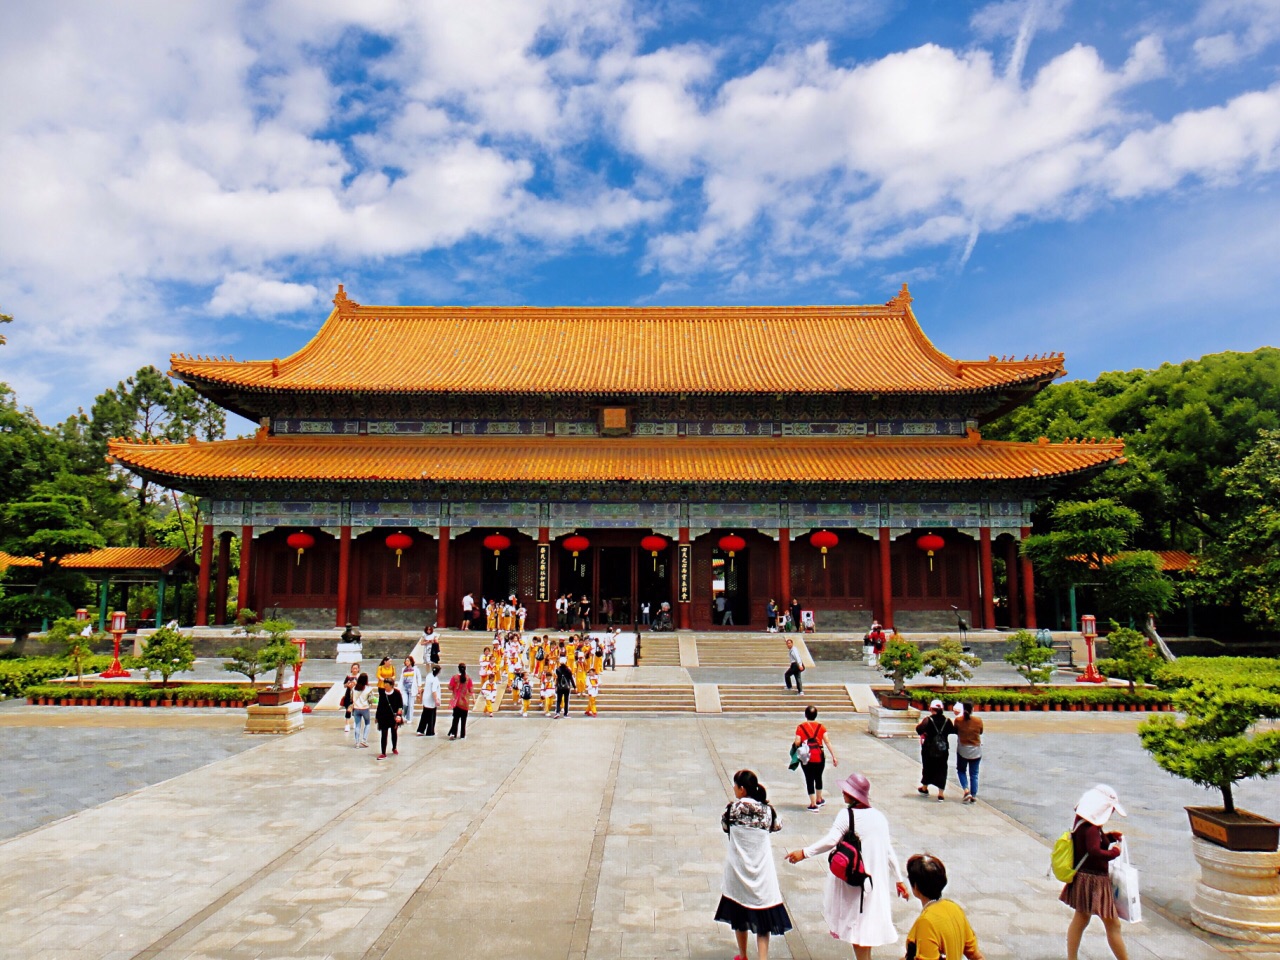 【携程攻略】北京保和殿景点,保和殿是故宫三大殿的最内一道。明朝时大典前皇帝常在此更衣，册立皇…